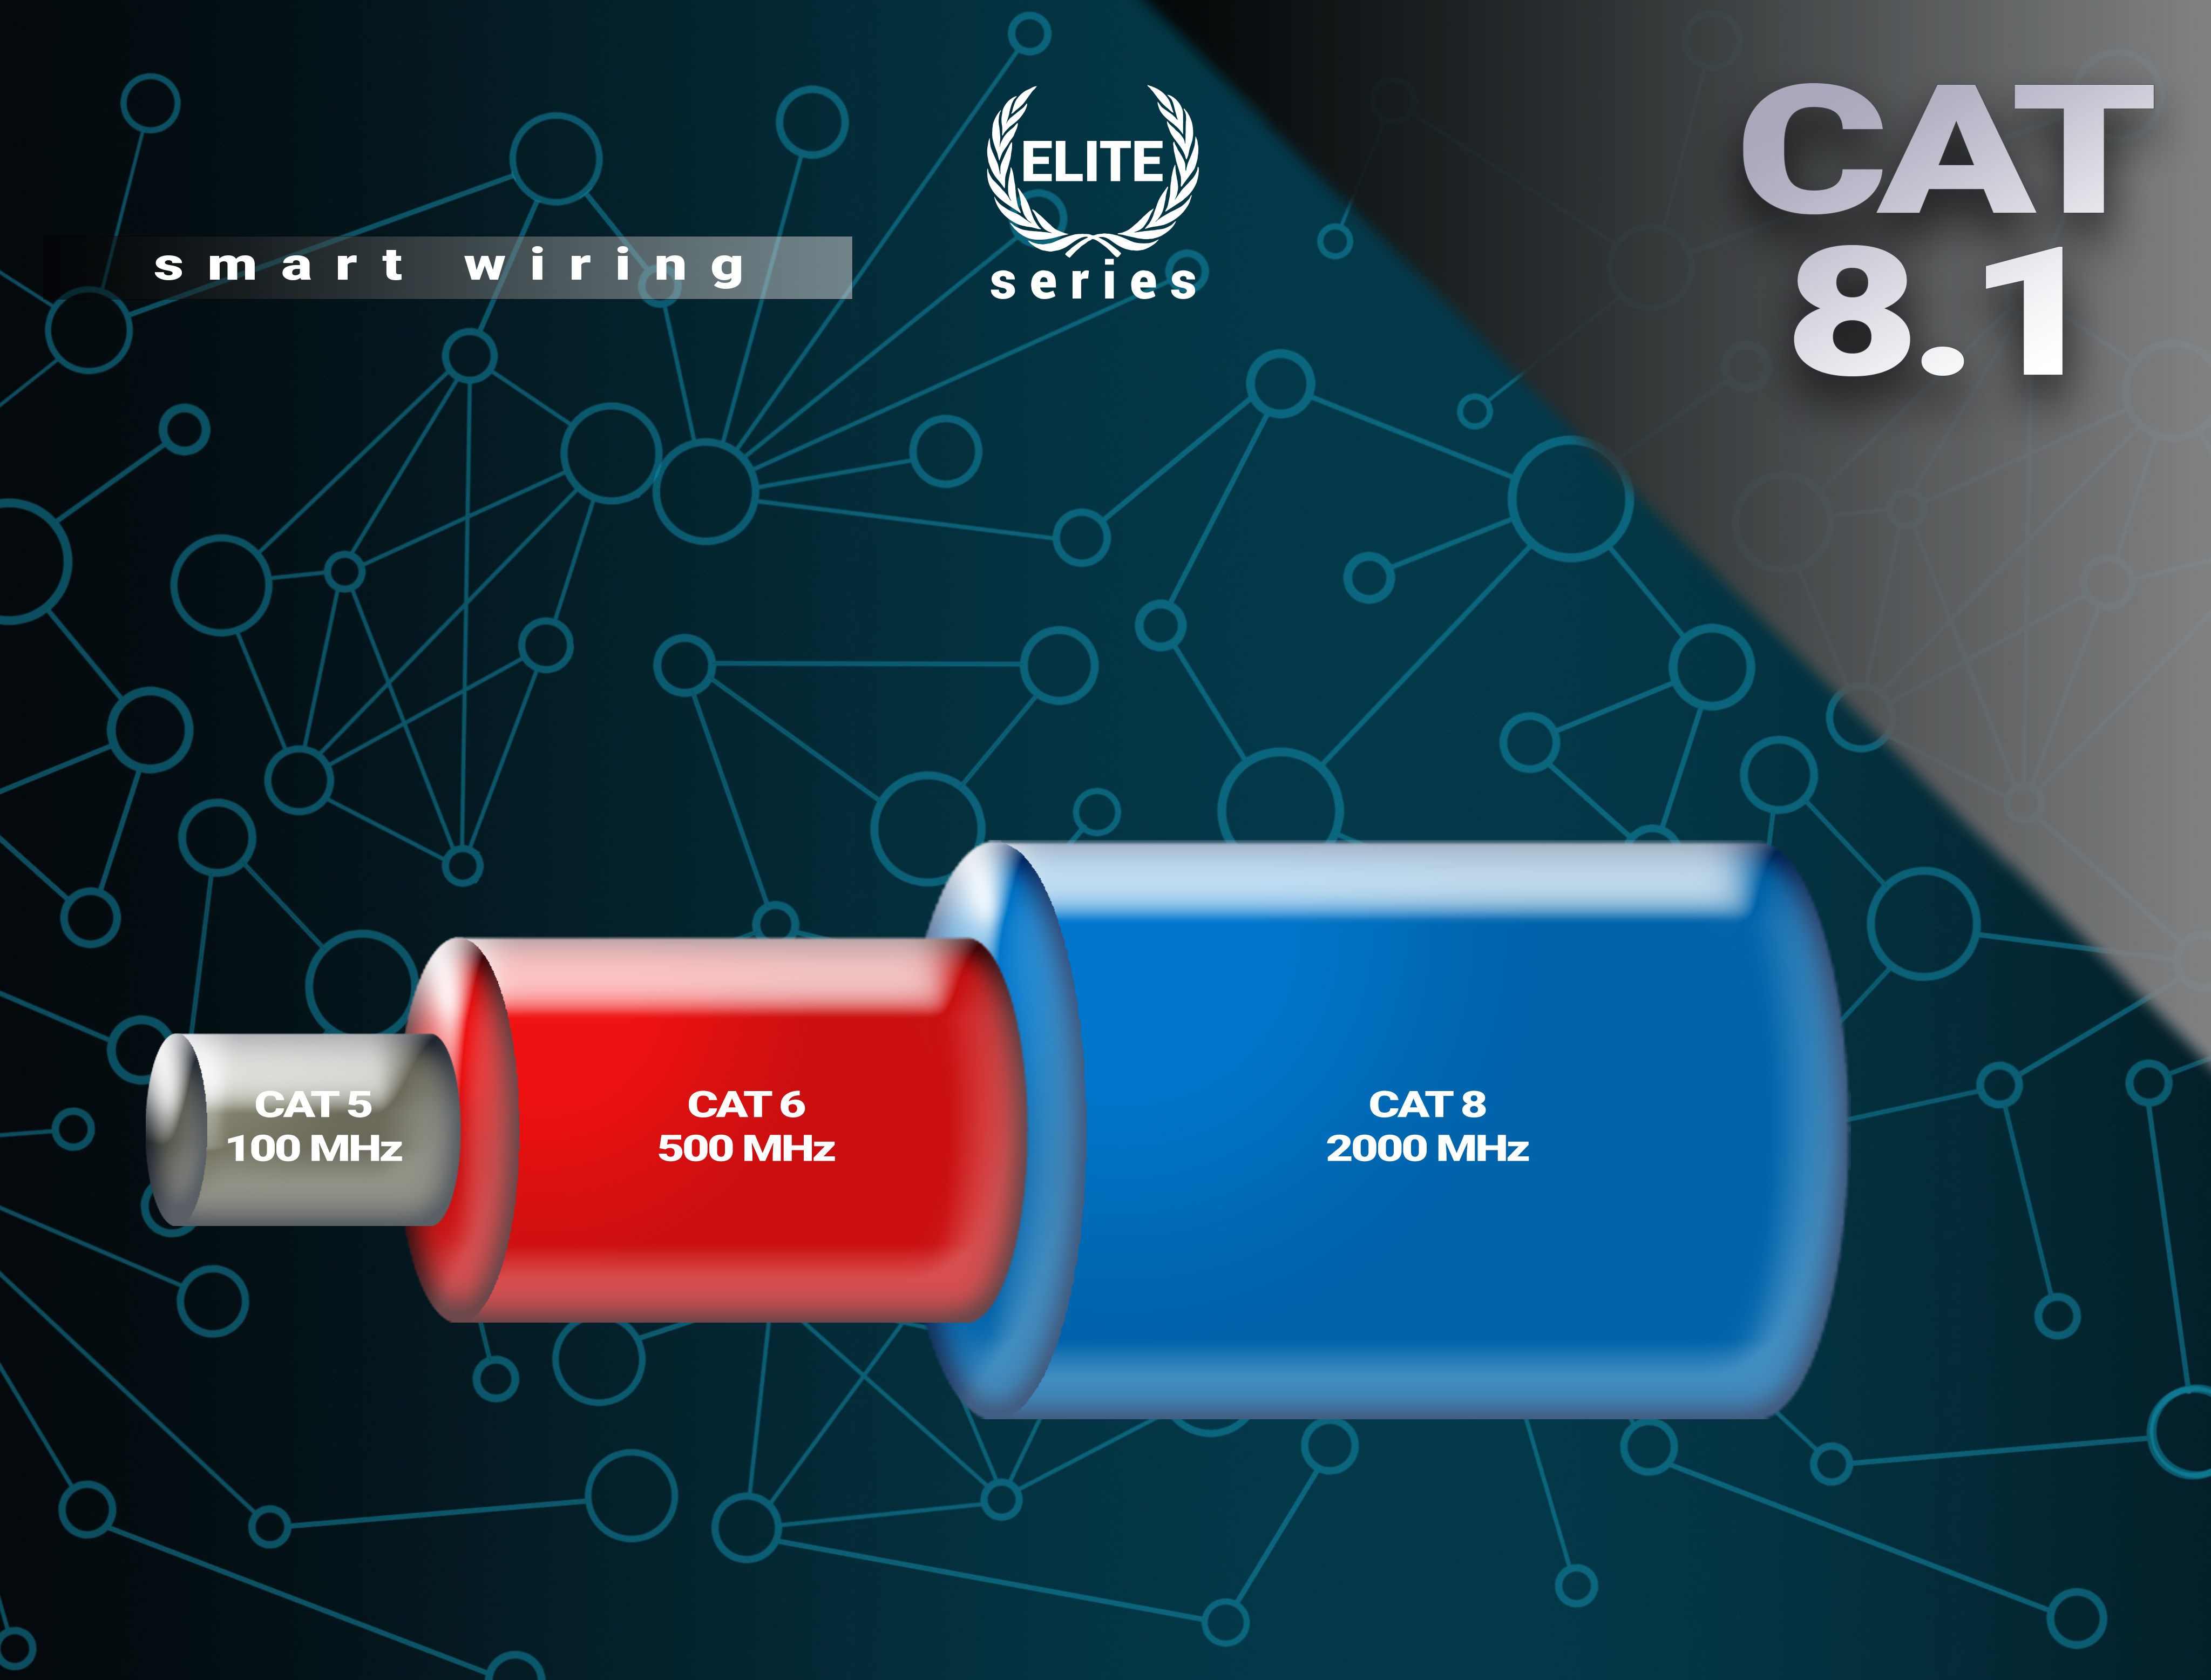 BIVANI Premium 40 Gbps LAN 8.1 - Netzwerkkabel, CAT Kabel m Elite-Series, 2